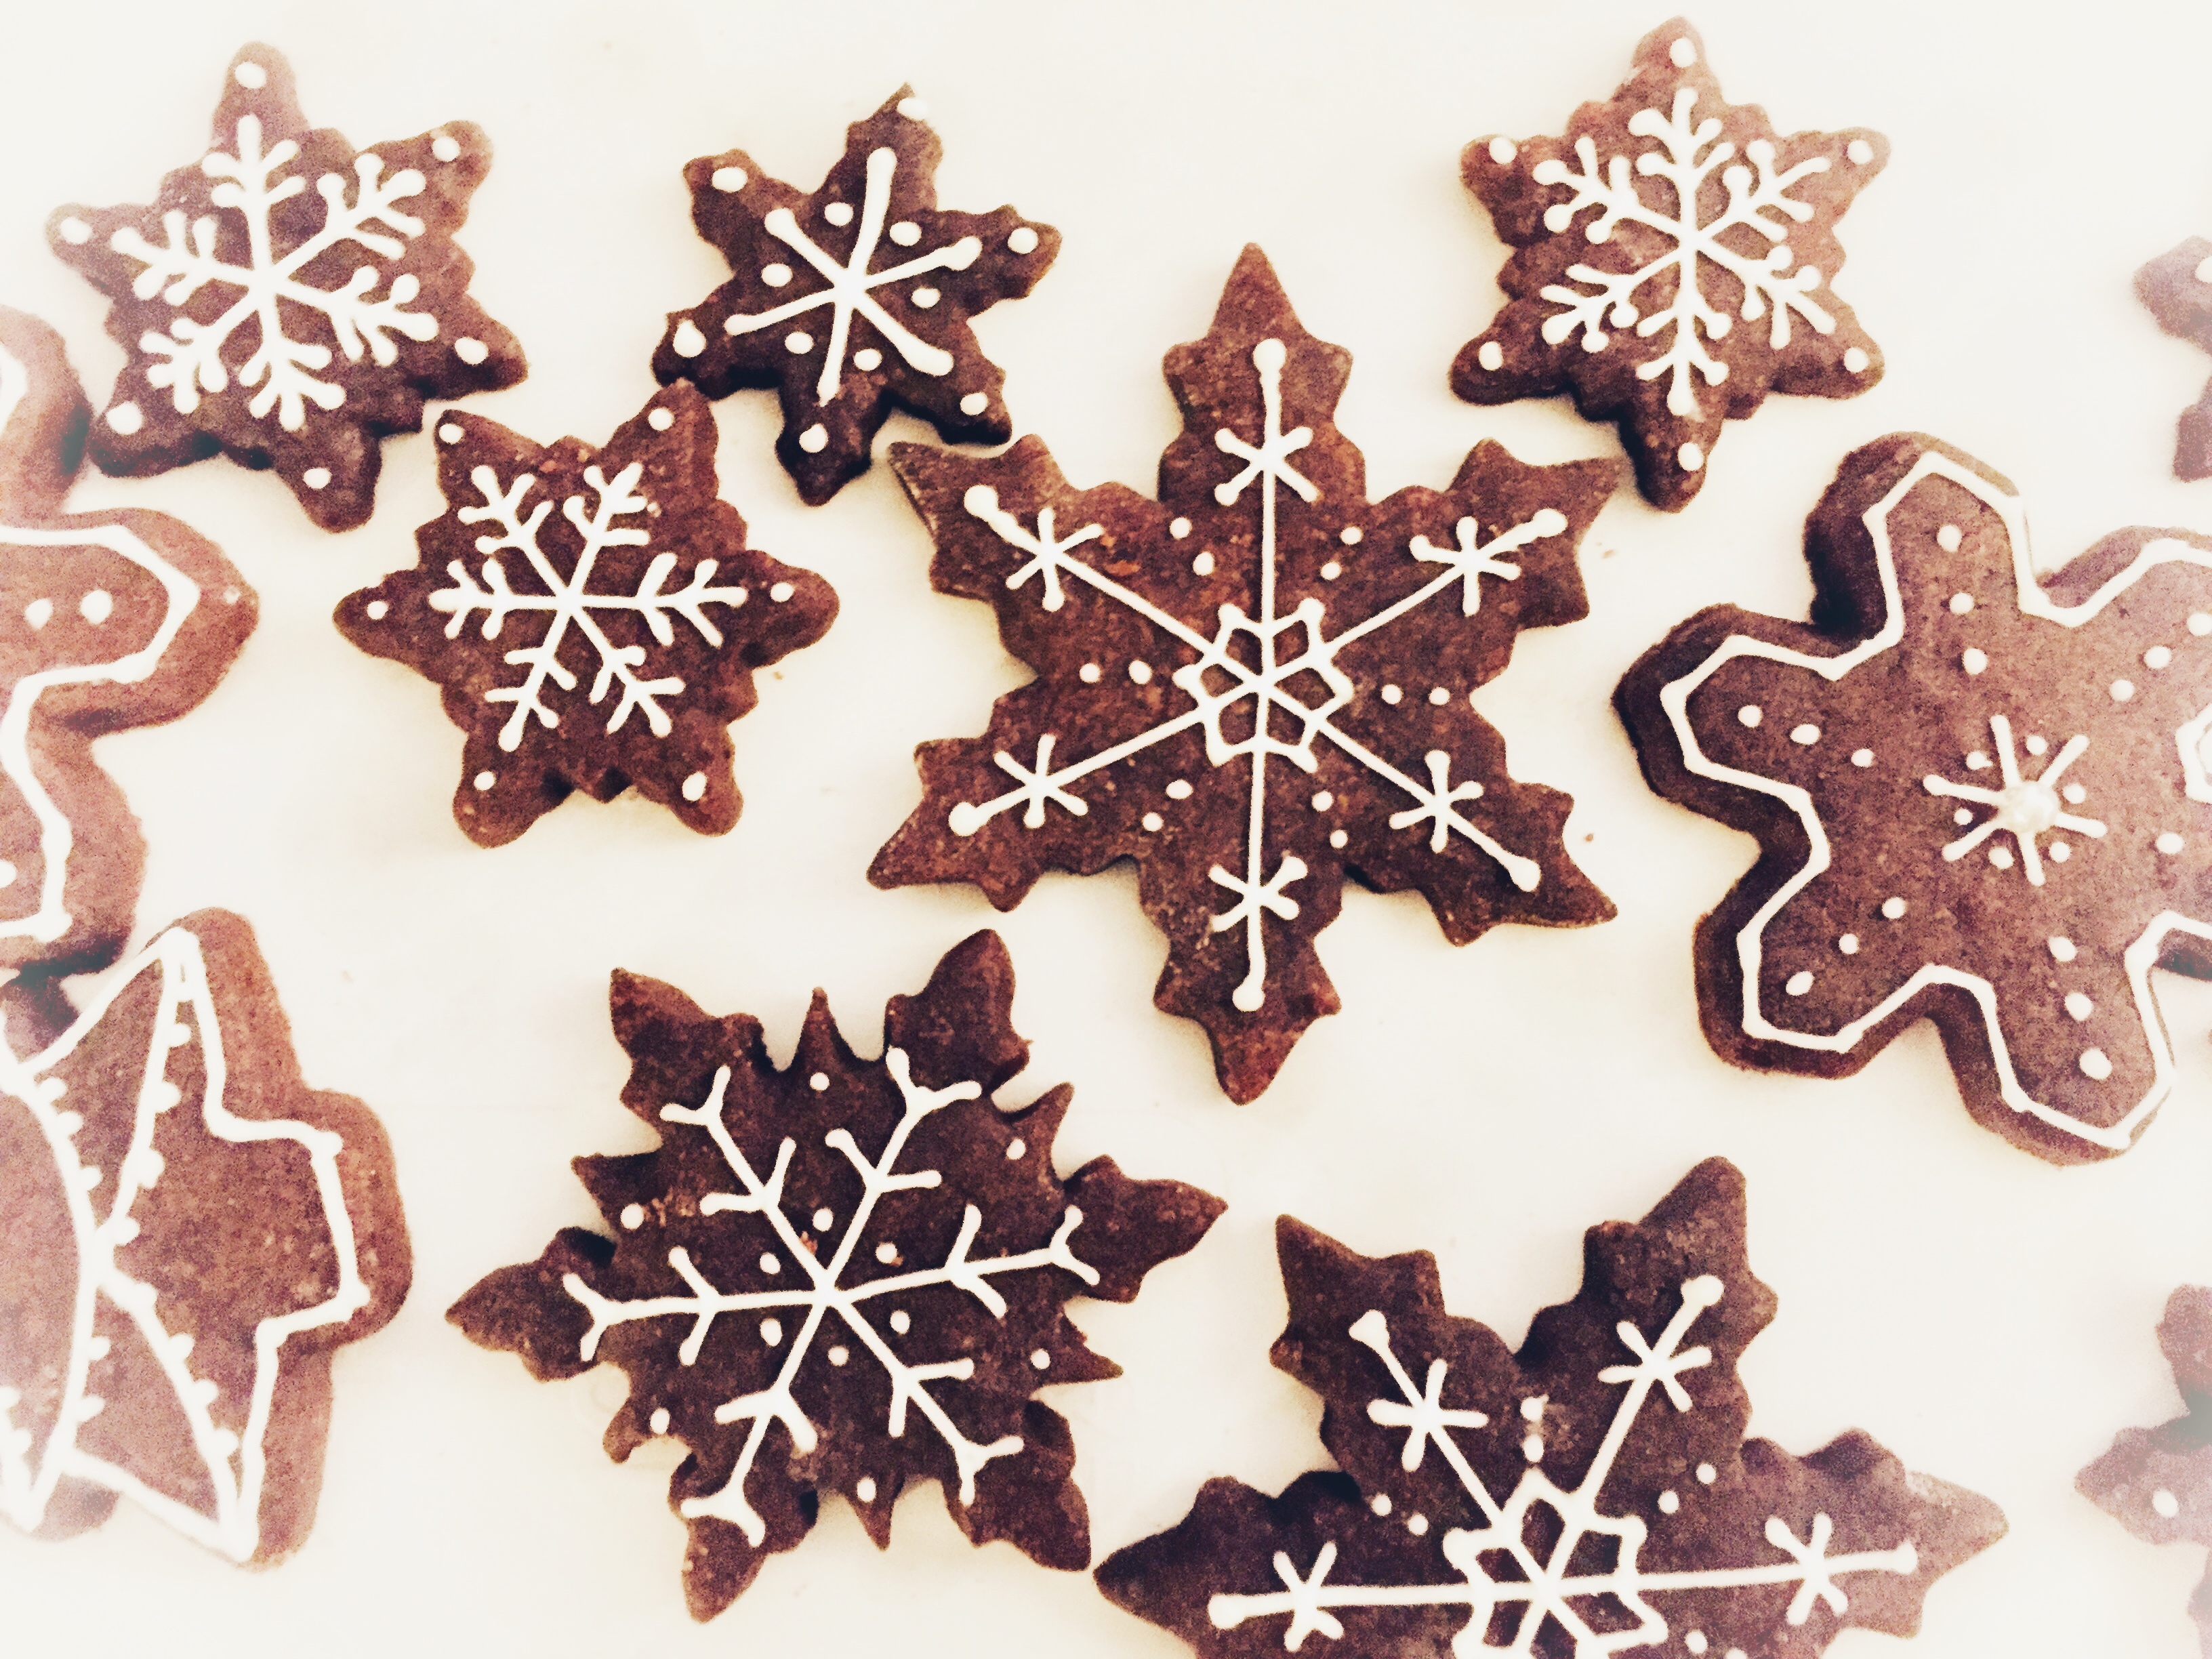 Biscotti di Natale: Sablée al cacao decorati con ghiaccia reale